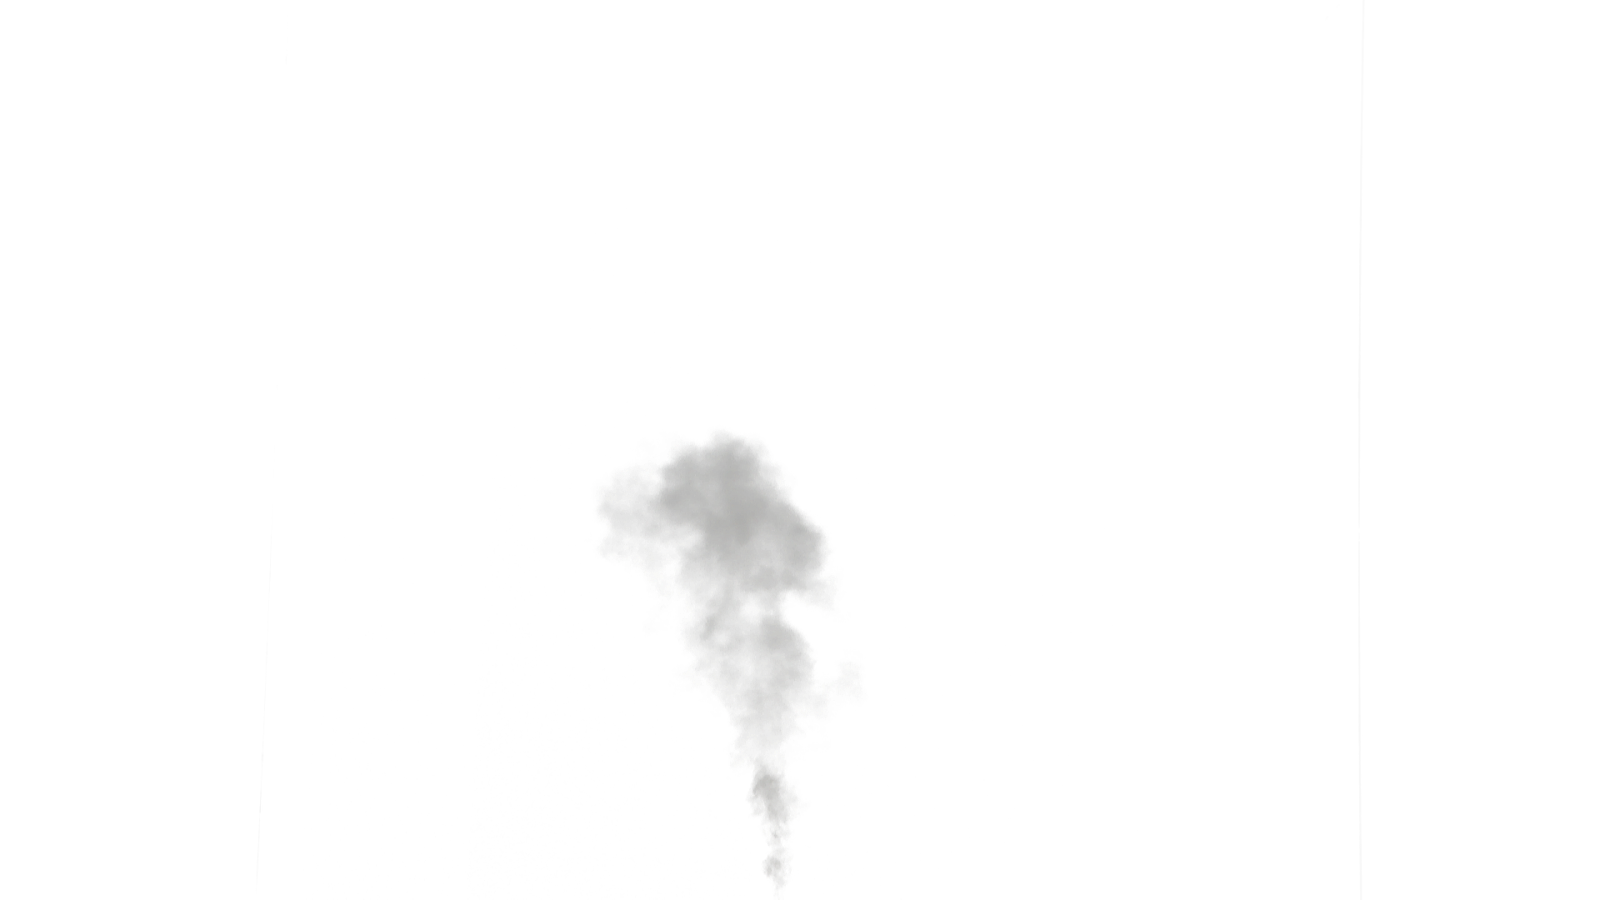 Nhận tải ảnh khói trong suốt HQ PNG miễn phí từ FreePNGImg. Tận hưởng cảm giác của khói trong suốt và từ đó tạo ra những tác phẩm nghệ thuật đầy sáng tạo và độc đáo.